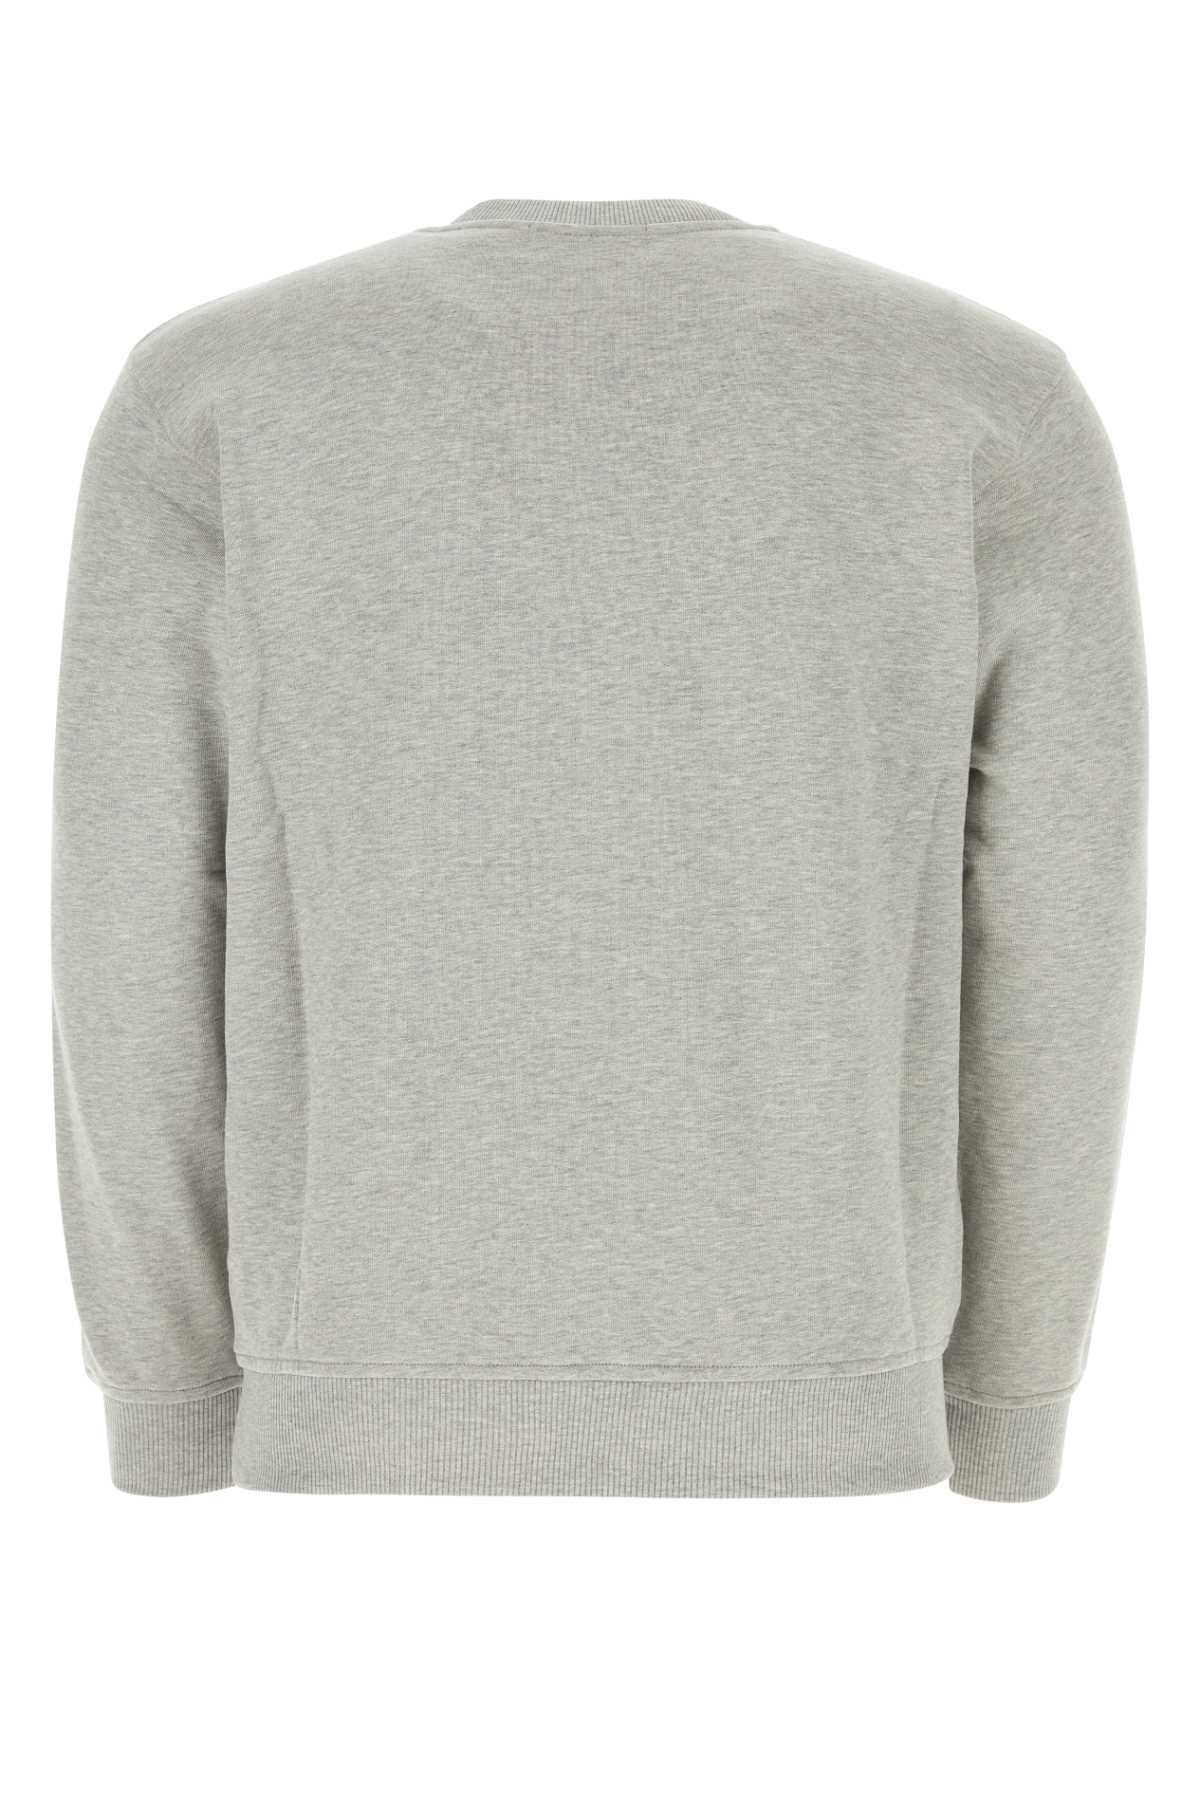 Comme Des Garçons Shirt Grey Cotton Comme Des Garã§ons Shirt X Lacoste Sweatshirt In Topgrey